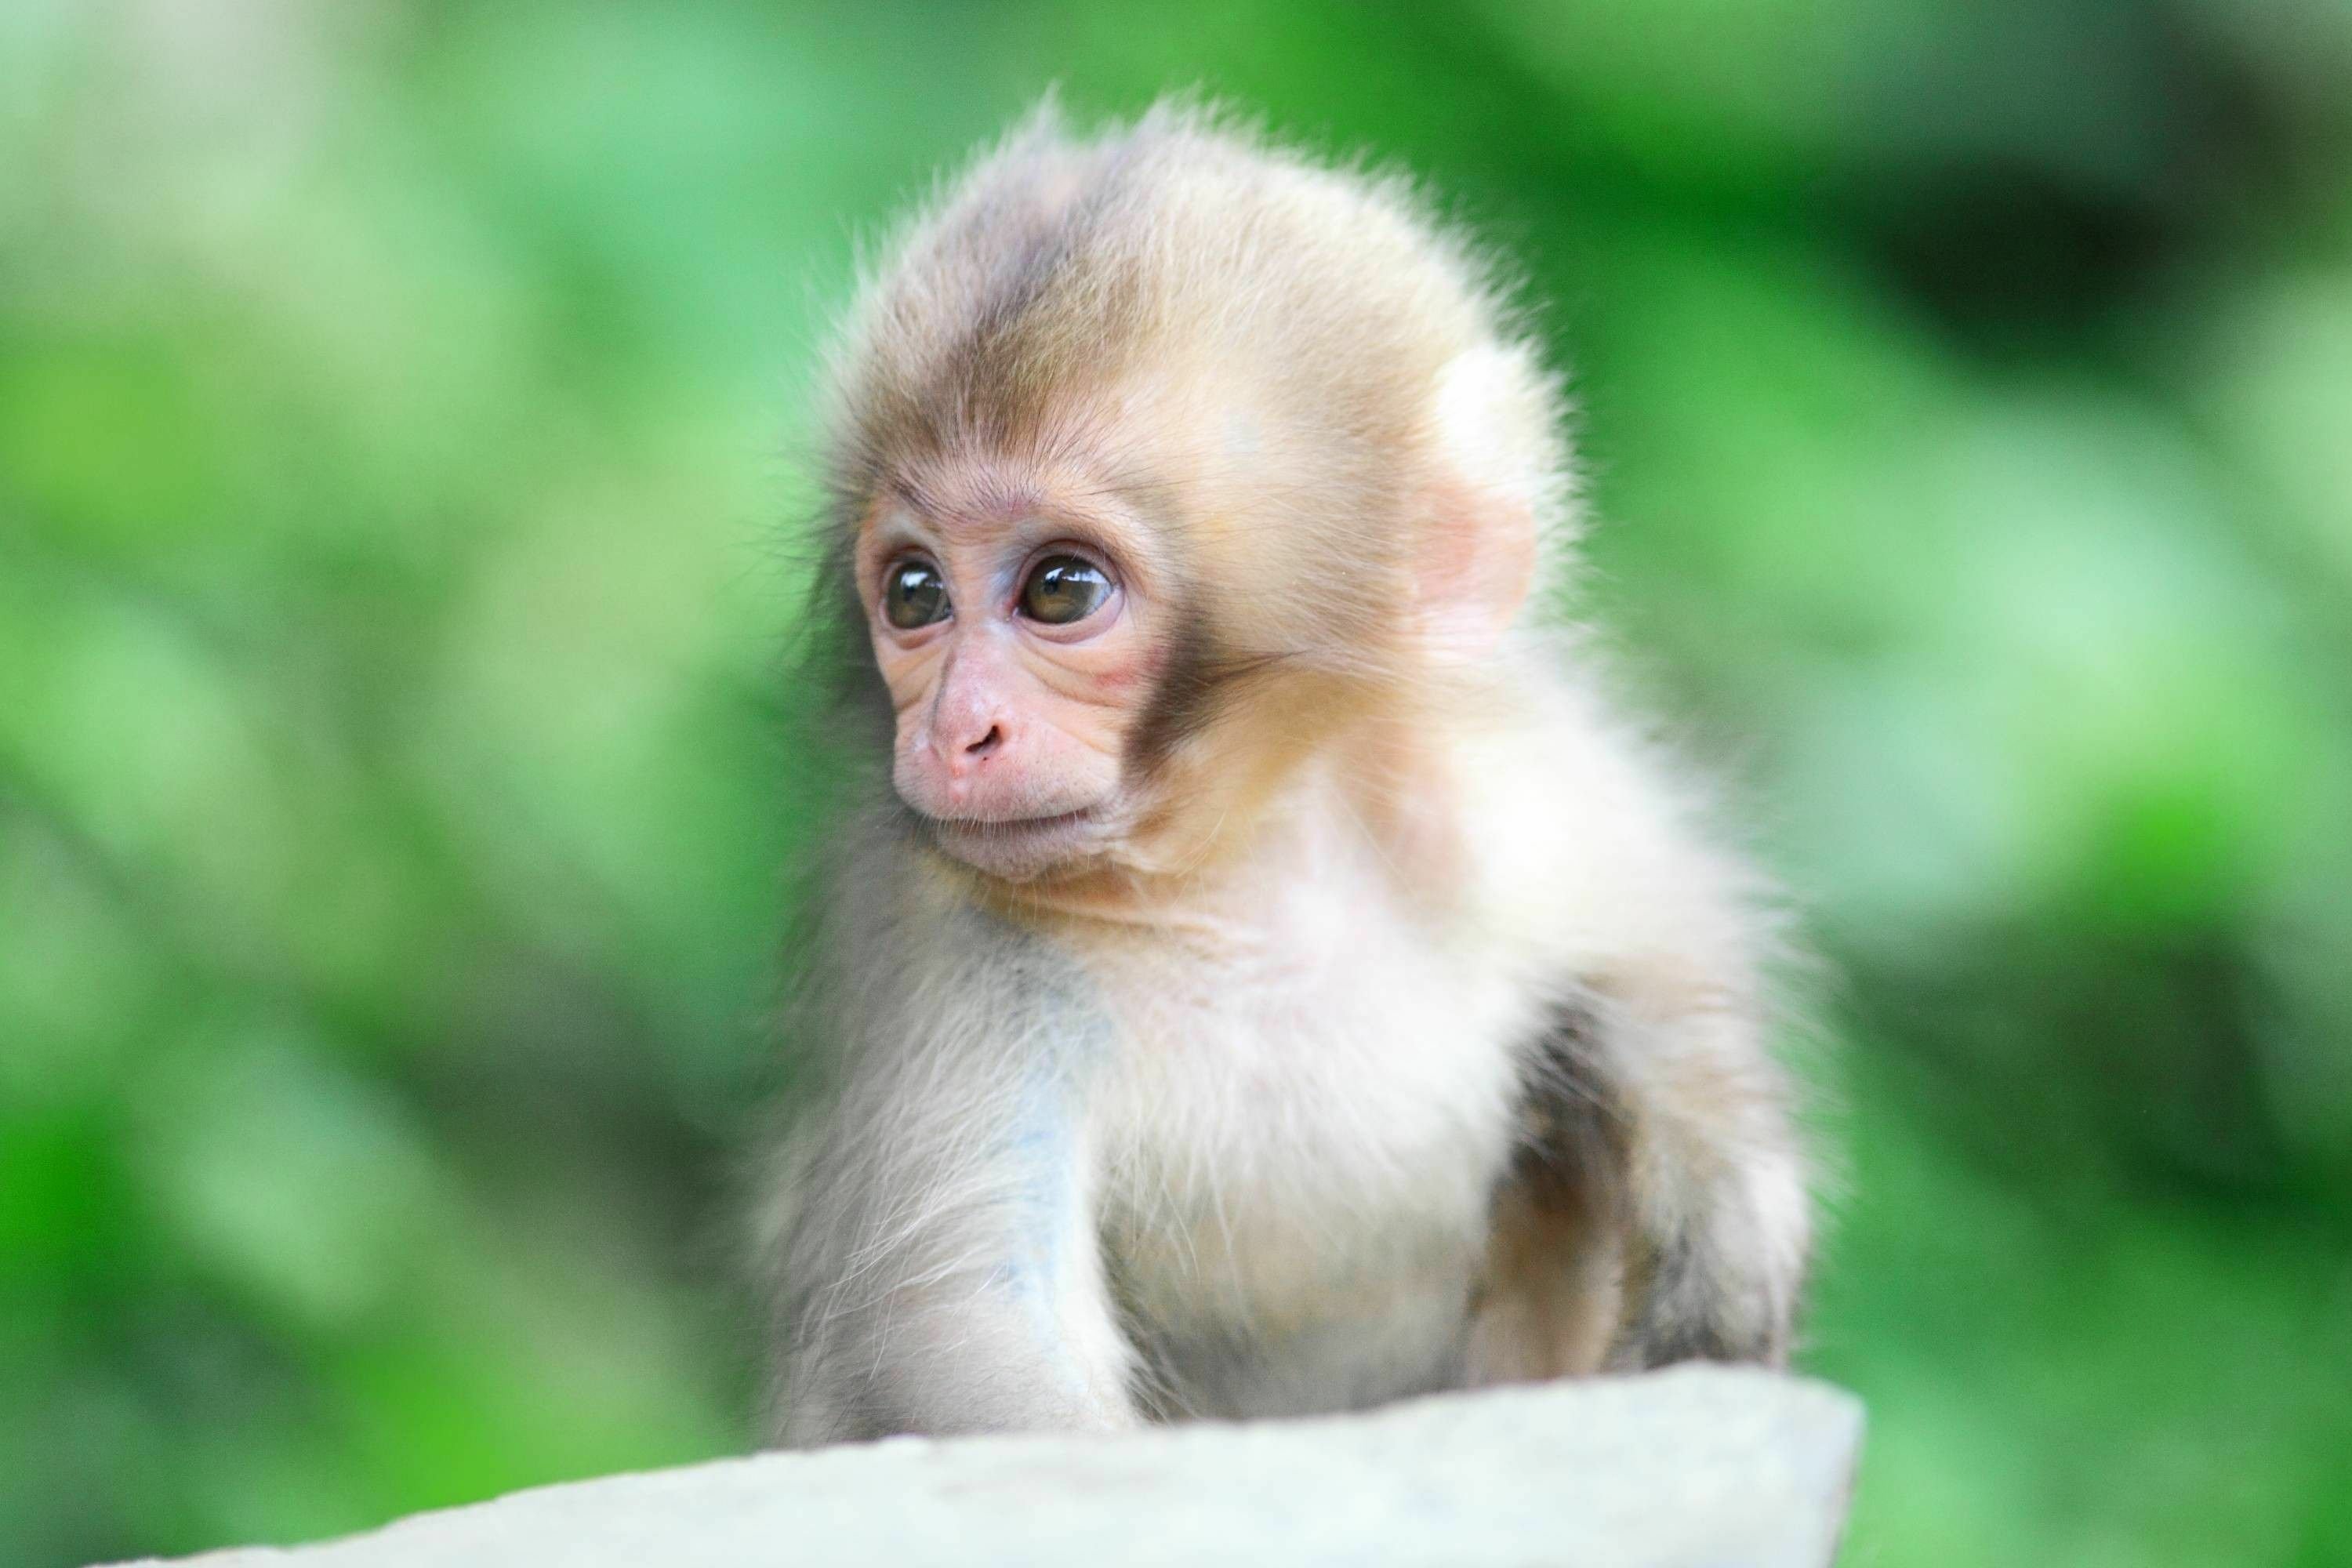 Small monkey. Кунац меймун. Обезьяны Кунац меймун. Мартышковые приматы. Милая обезьянка.